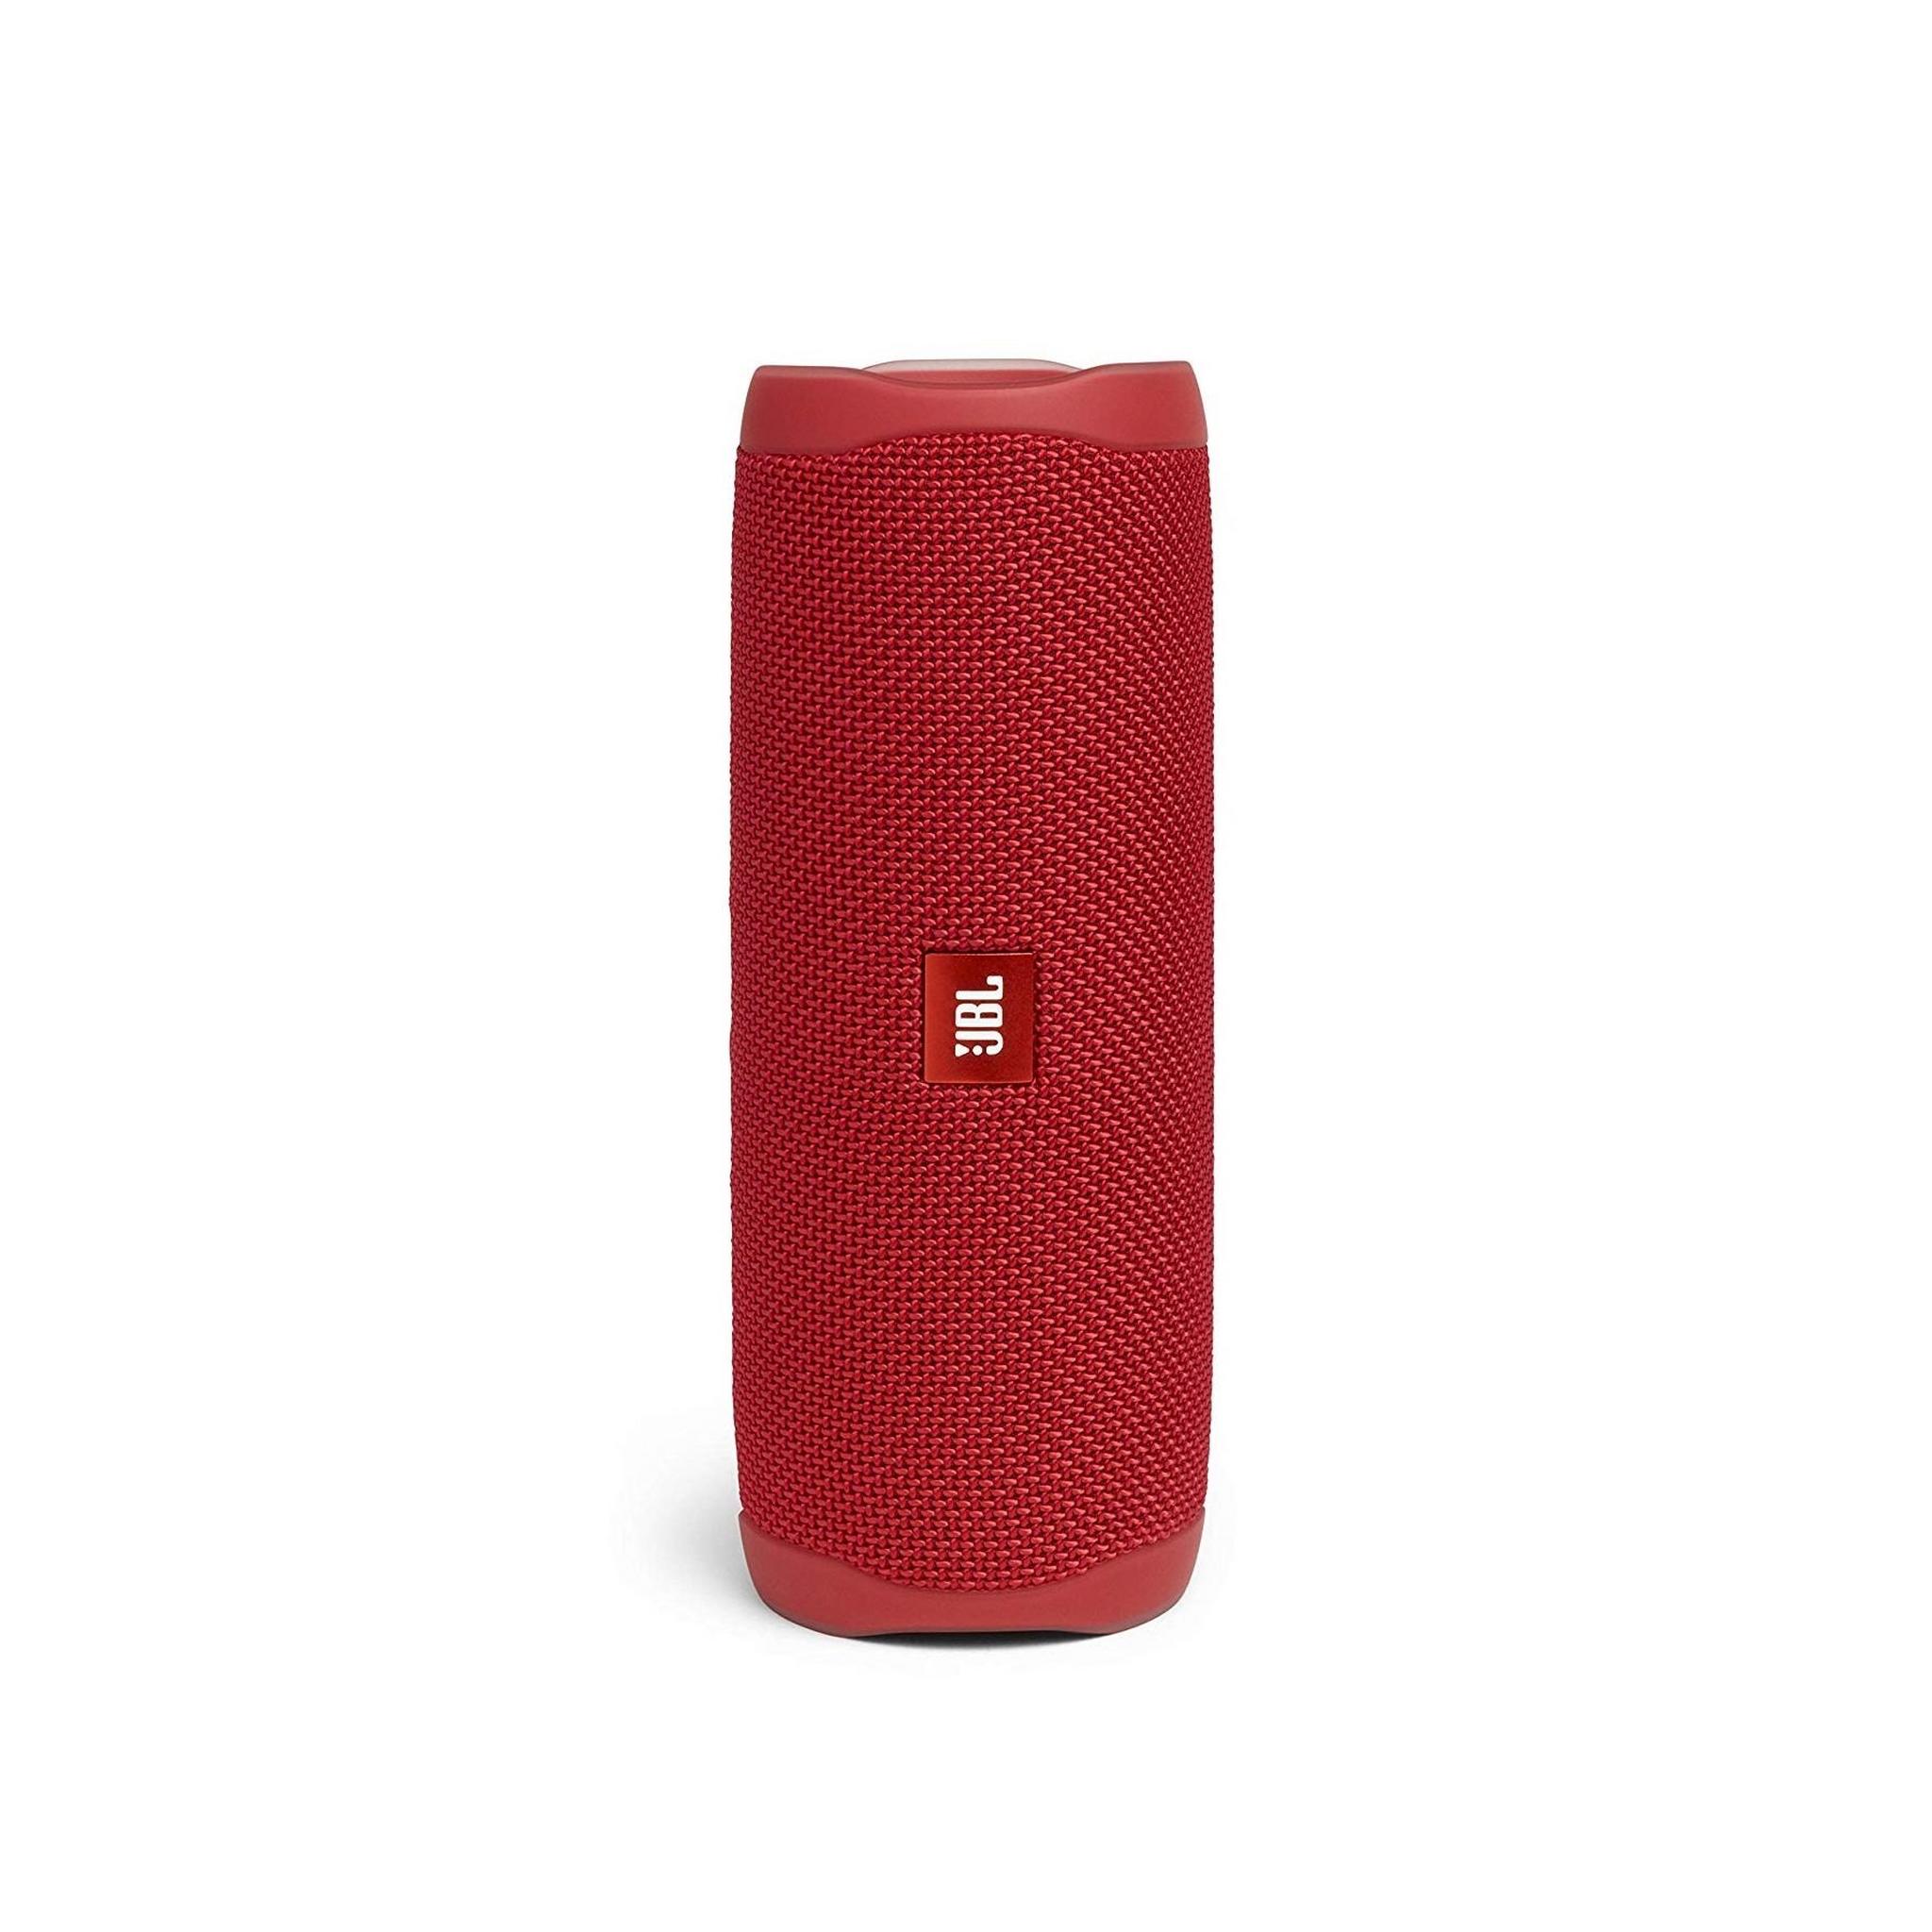 JBL Flip 5 Waterproof Bluetooth Portable Speakers - Red